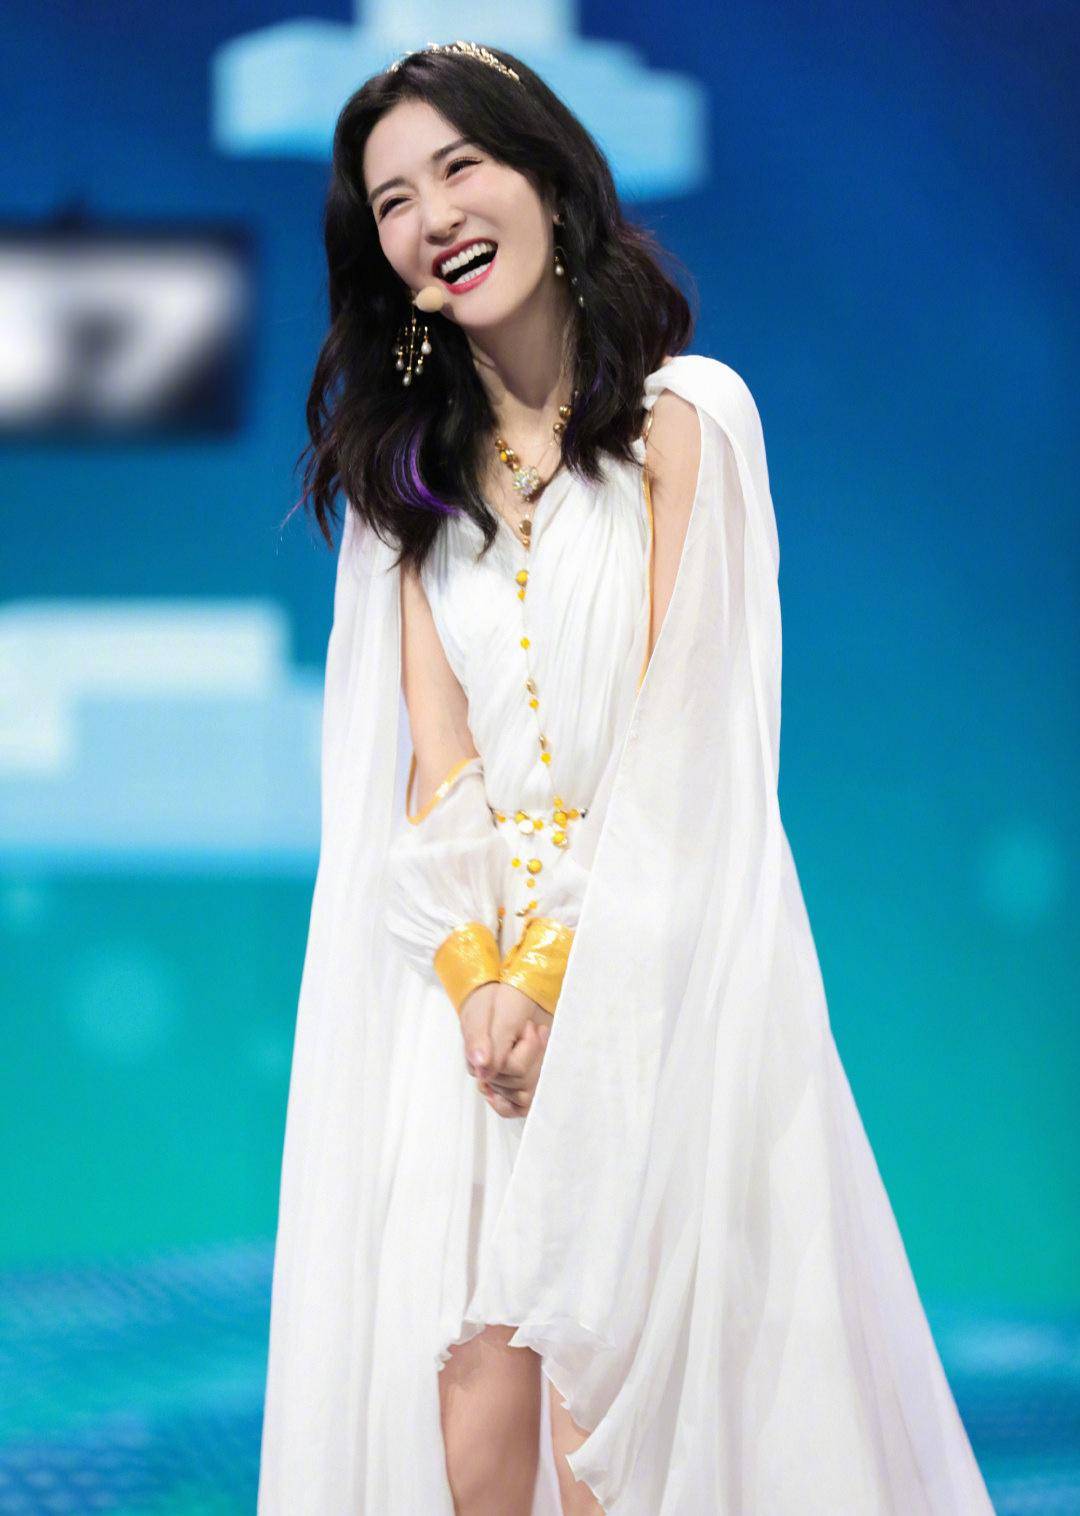 原创谢娜新造型来袭,白色长裙设计感十足,八字刘海卷发减龄又时髦